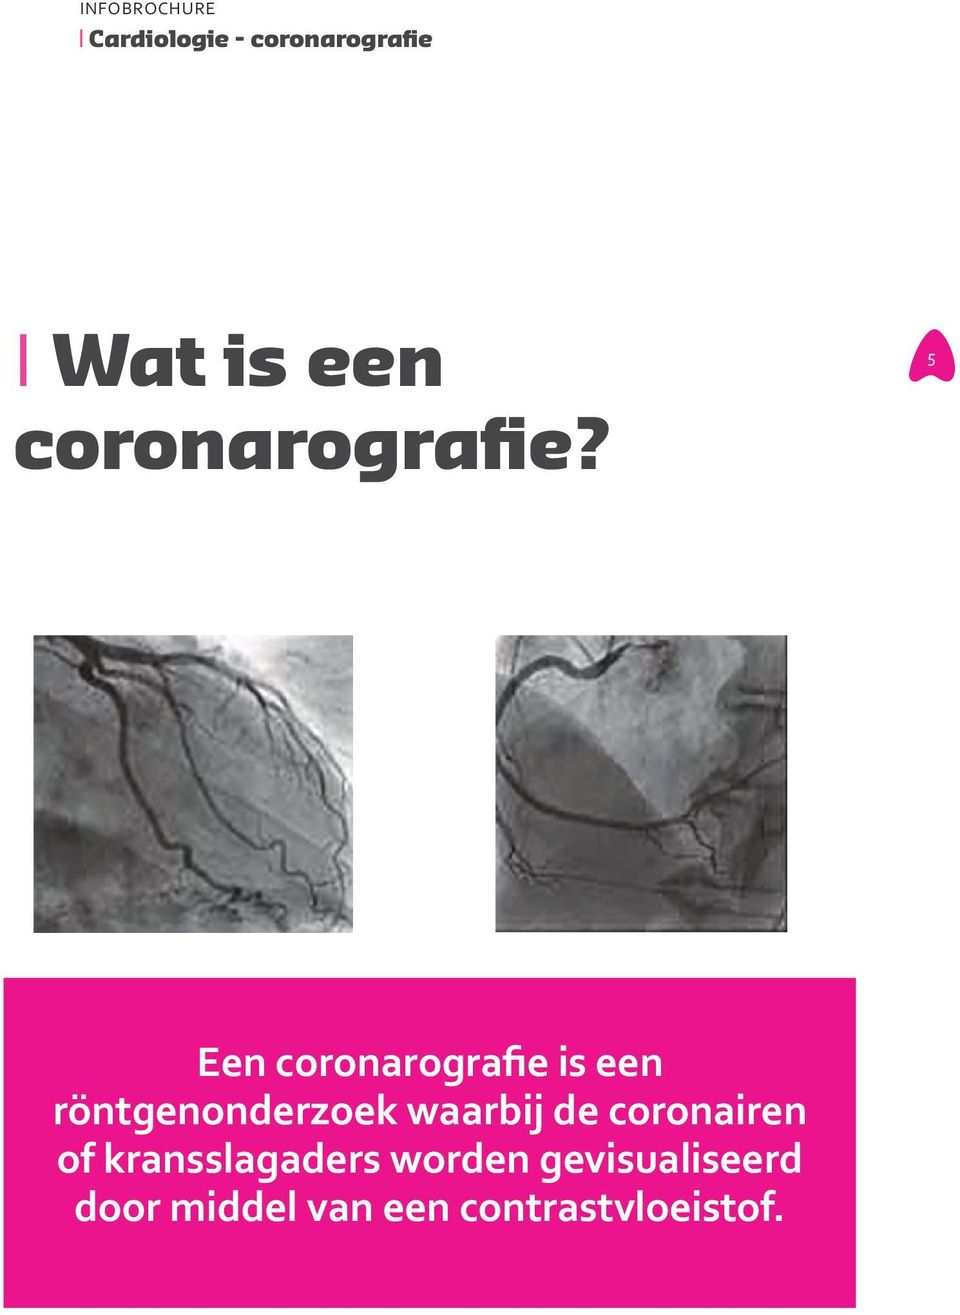 5 Een coronarografie is een röntgenonderzoek waarbij